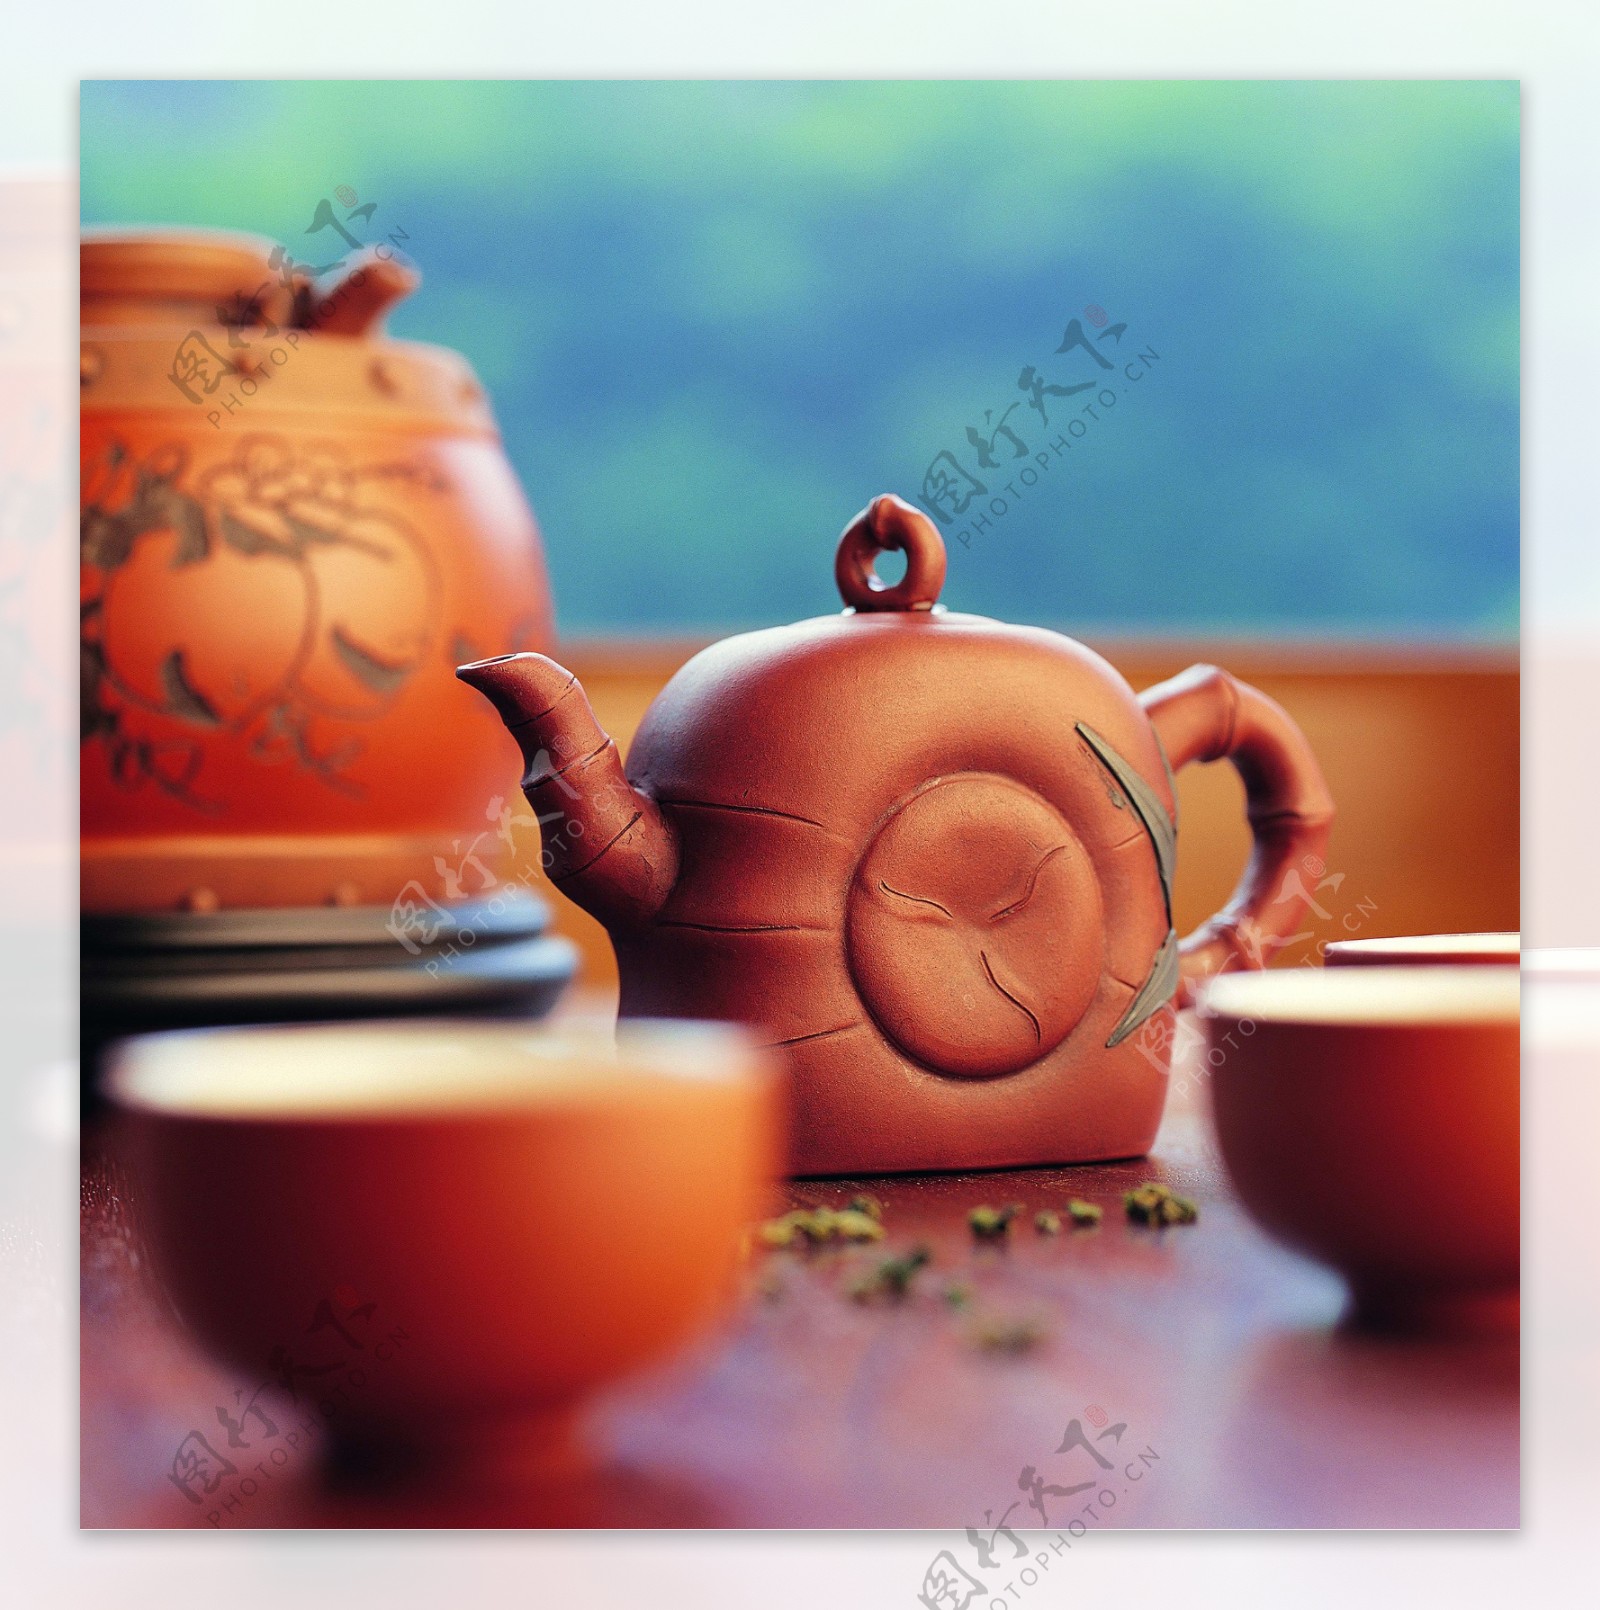 饮茶文化高清图片